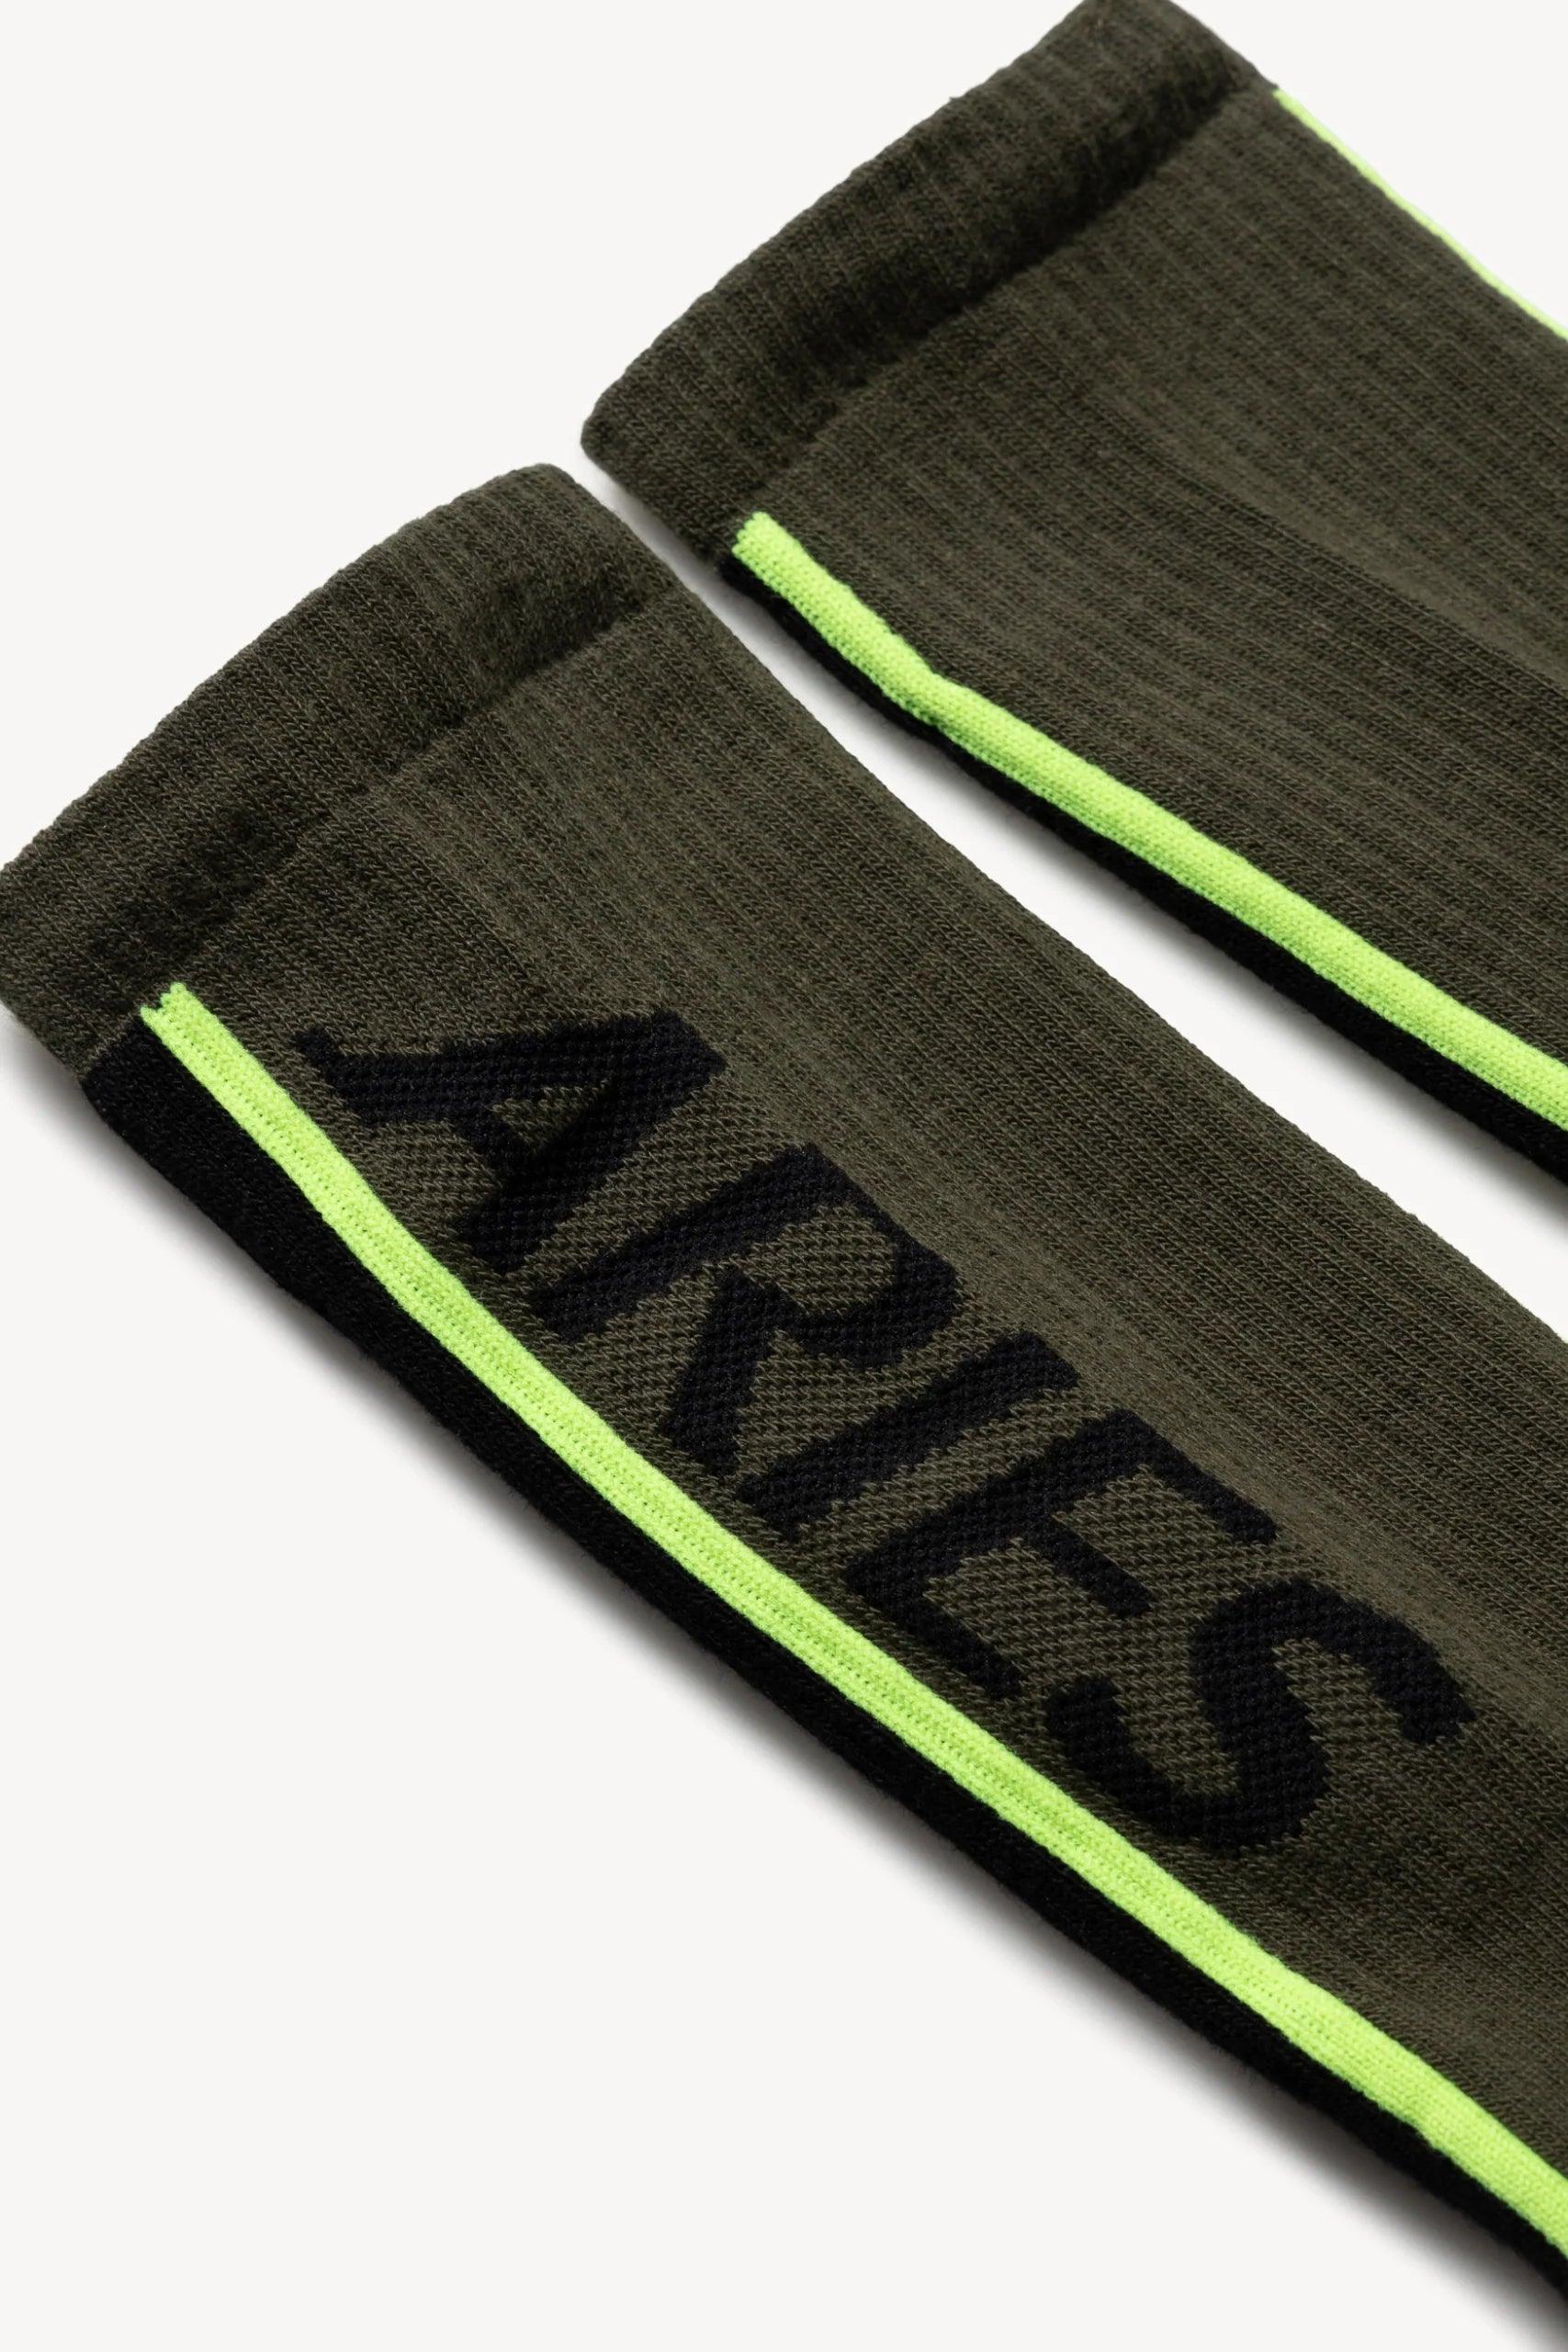 Aries Arise Credit Card Socks - Olive - L - XL - Socks